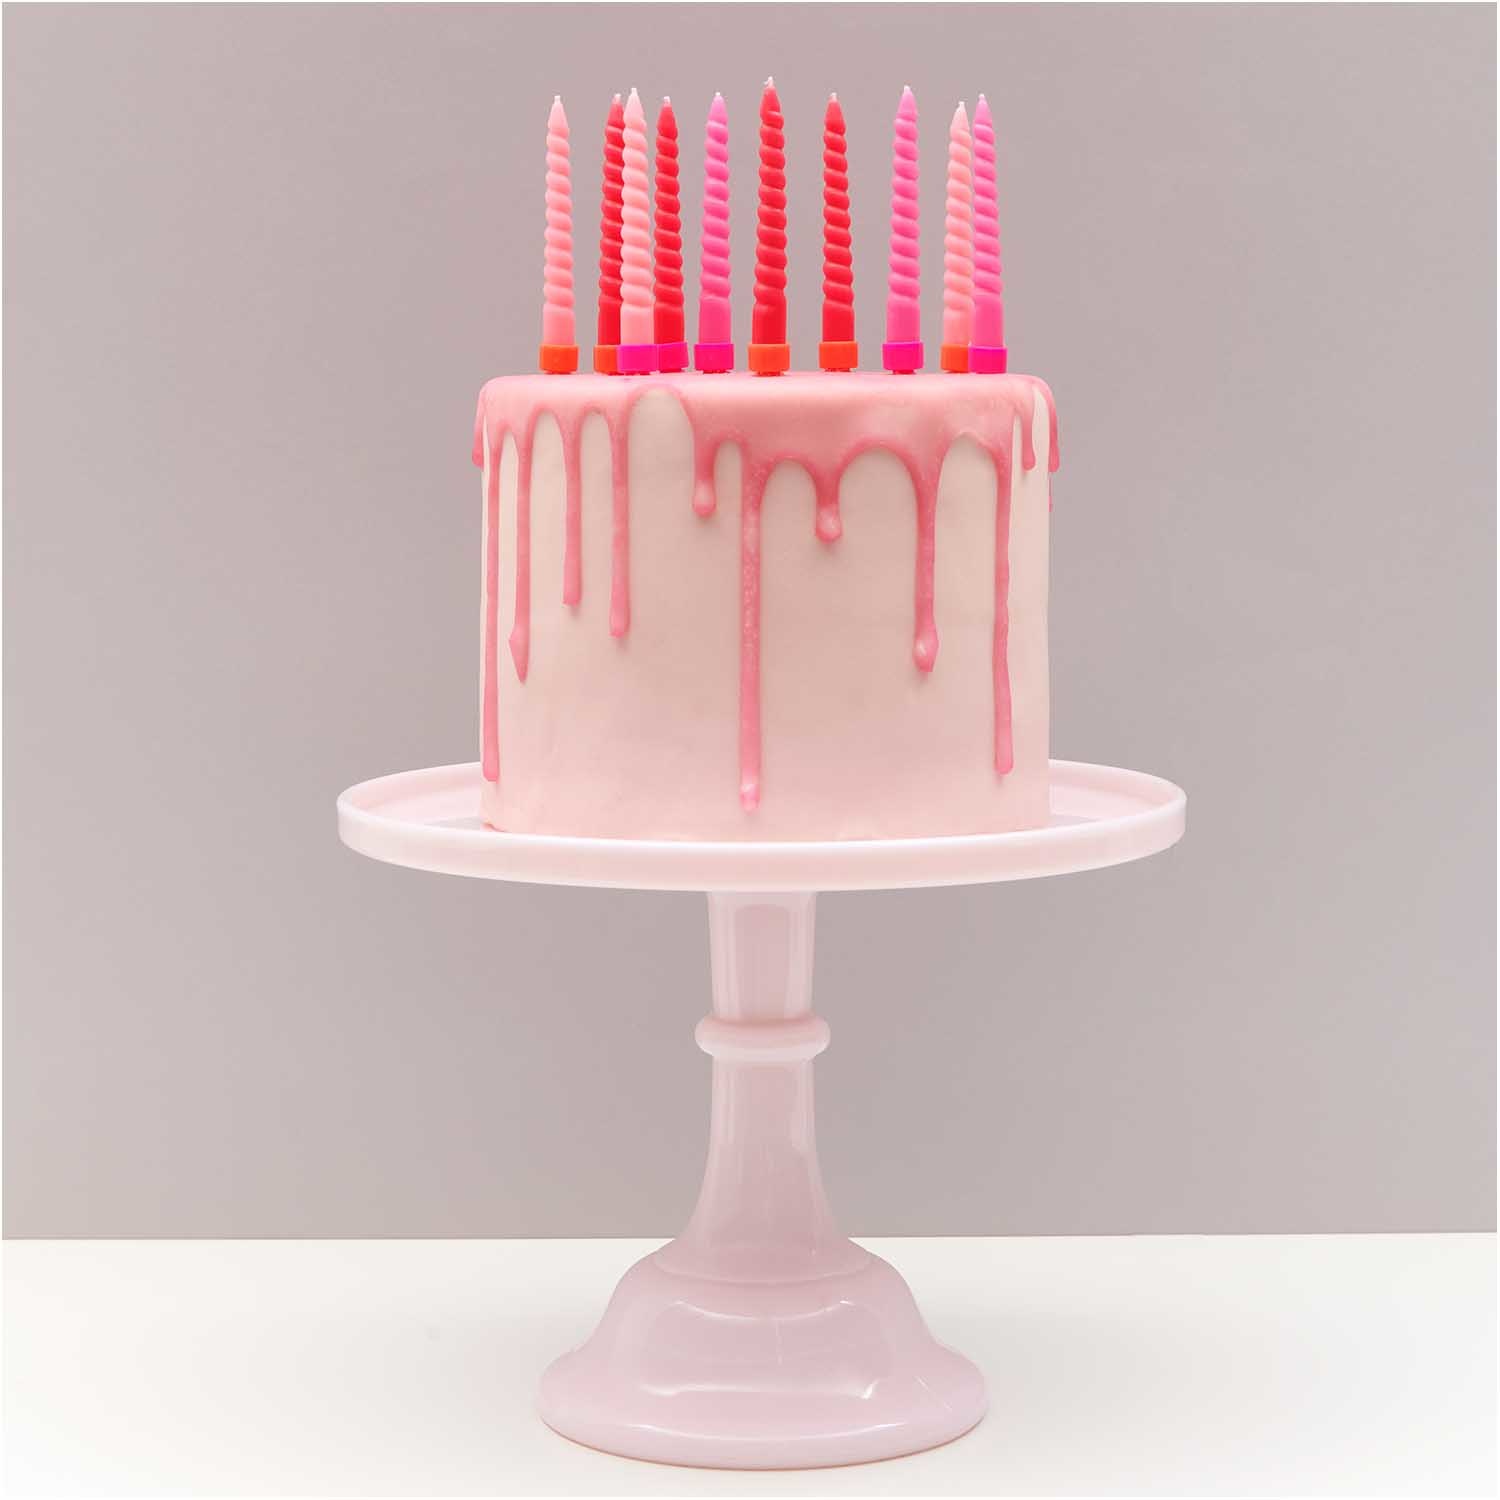 RICO Spiral candles, pink mix, 10 pcs., Ø 1,2 cm x 10 cm height